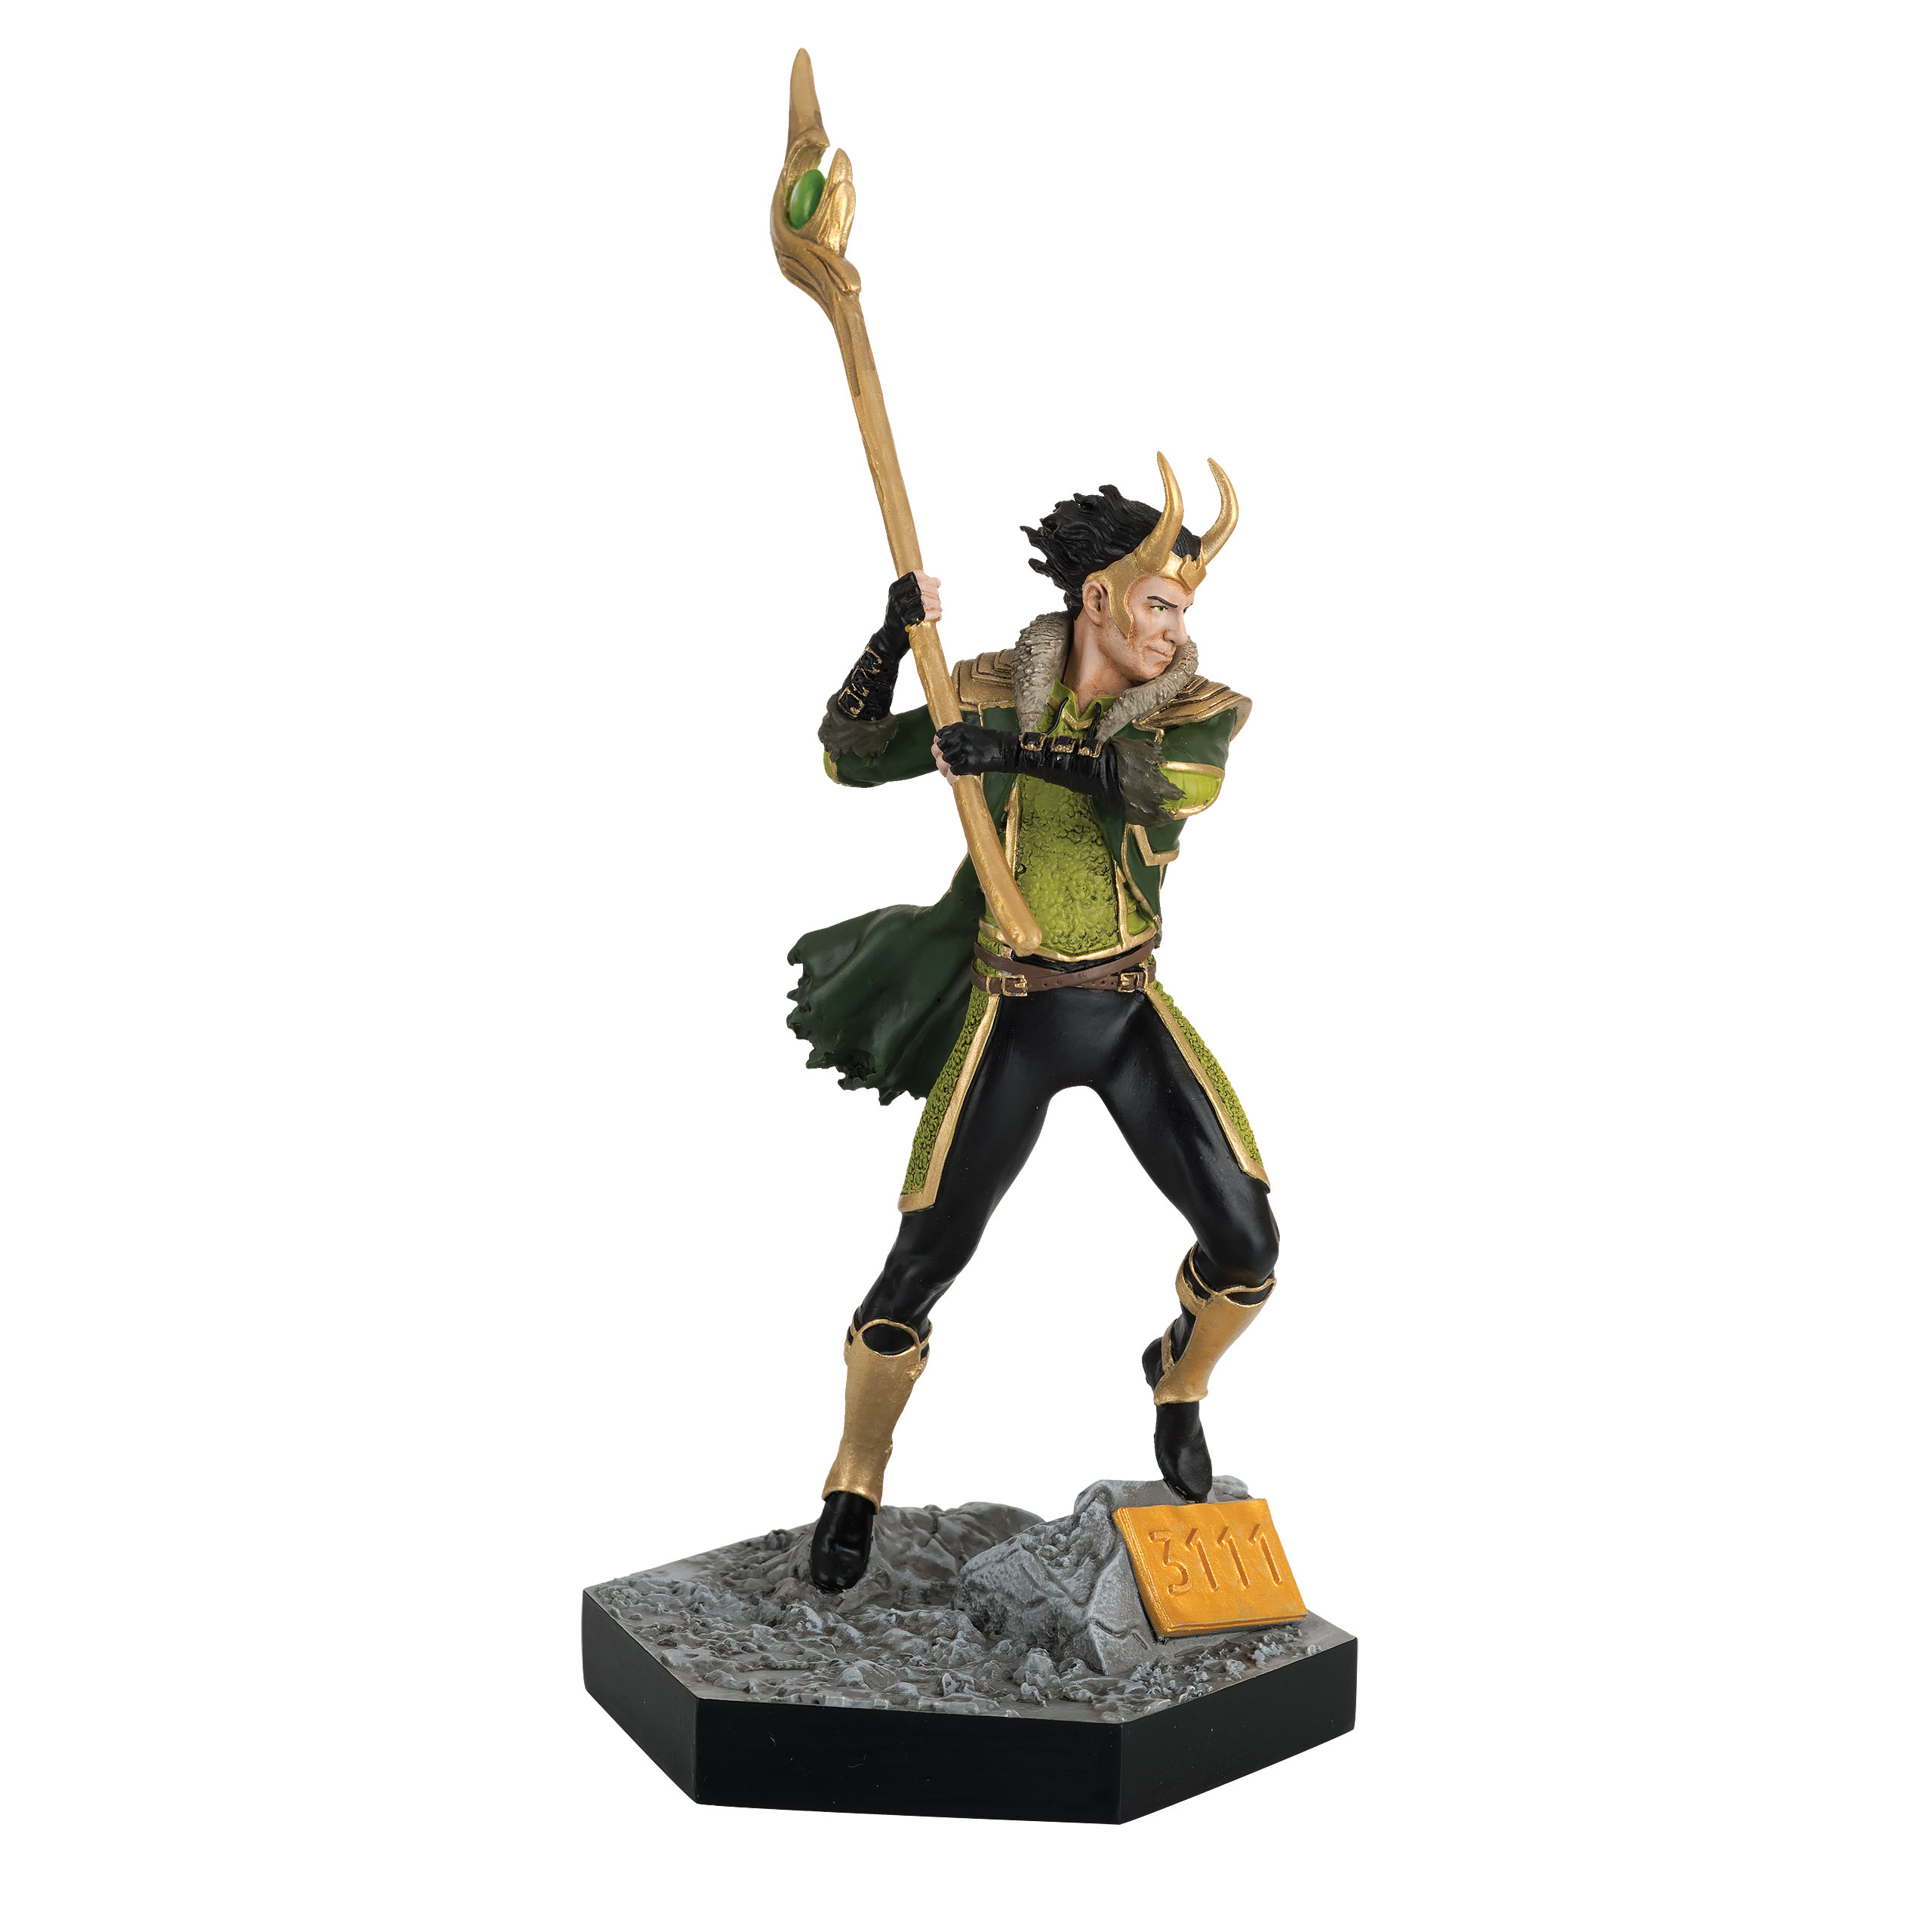 Marvel - Loki Figur Maßstab 1:16